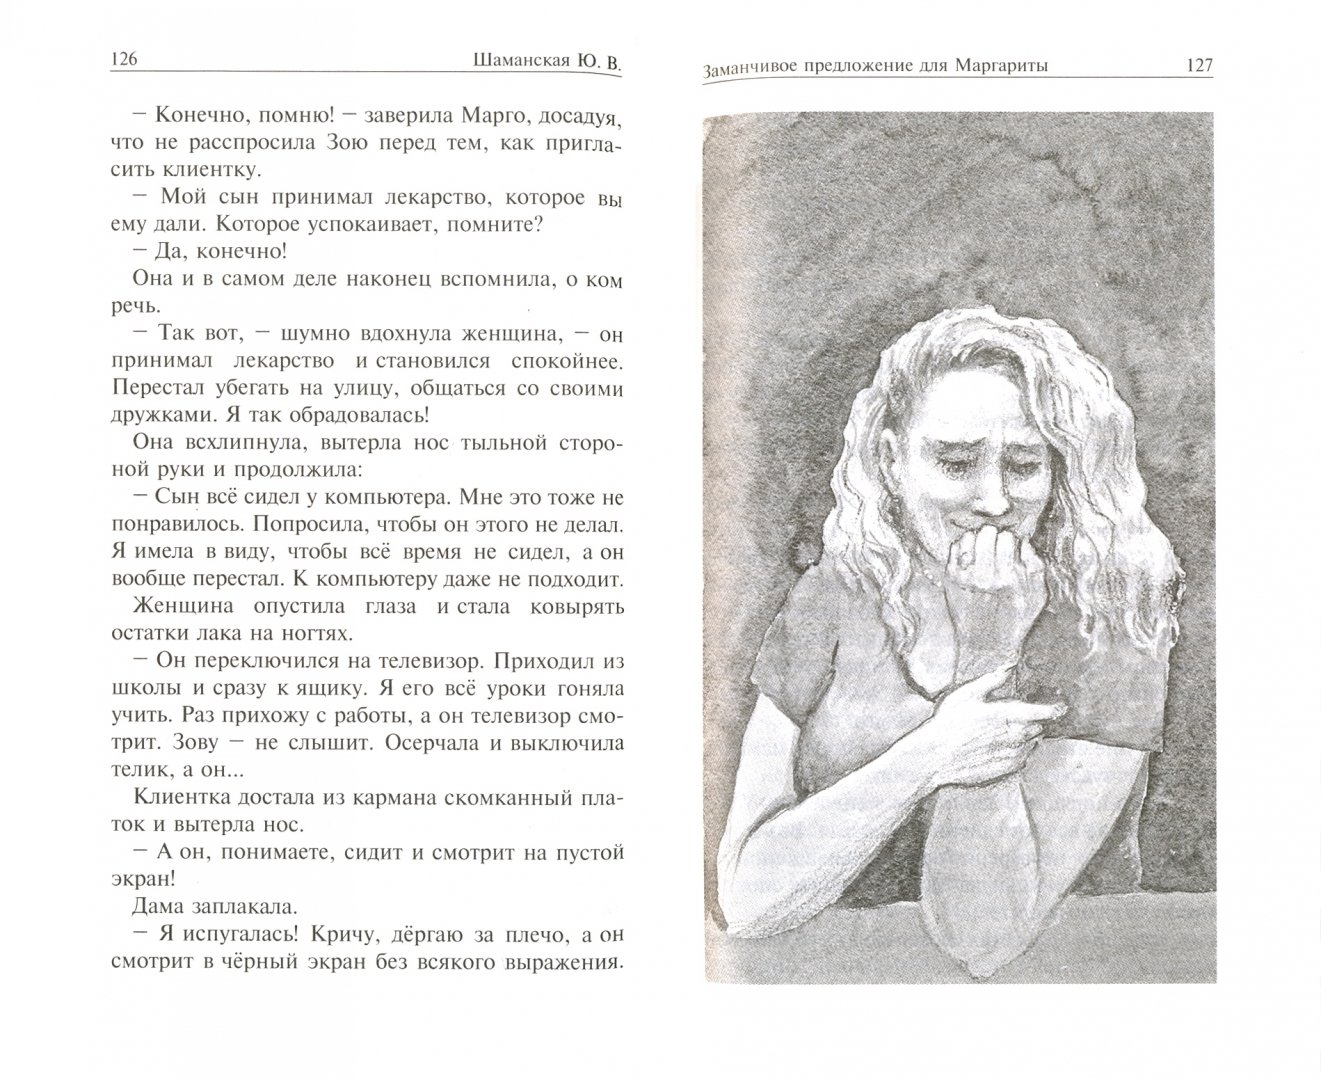 Иллюстрация 1 из 3 для Заманчивое предложение для Маргариты - Юлия Шаманская | Лабиринт - книги. Источник: Лабиринт